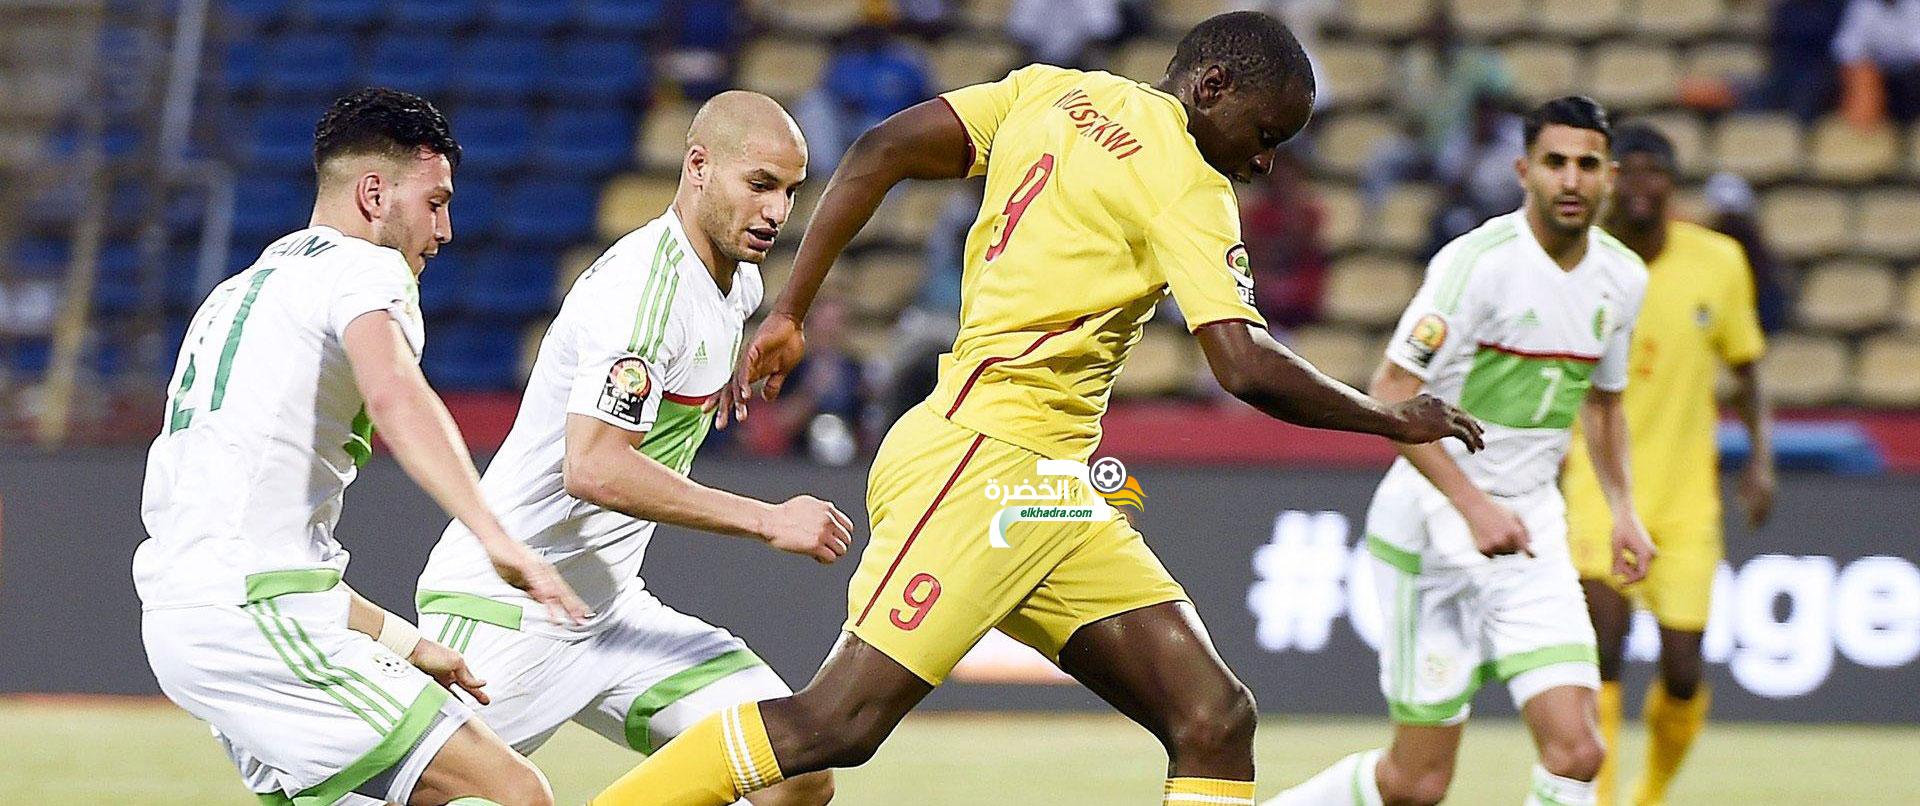 الجزائر - مالي : آخر اختبار لتشكيلة "الخضر" تحسبا لكأس أمم إفريقيا 2019 10